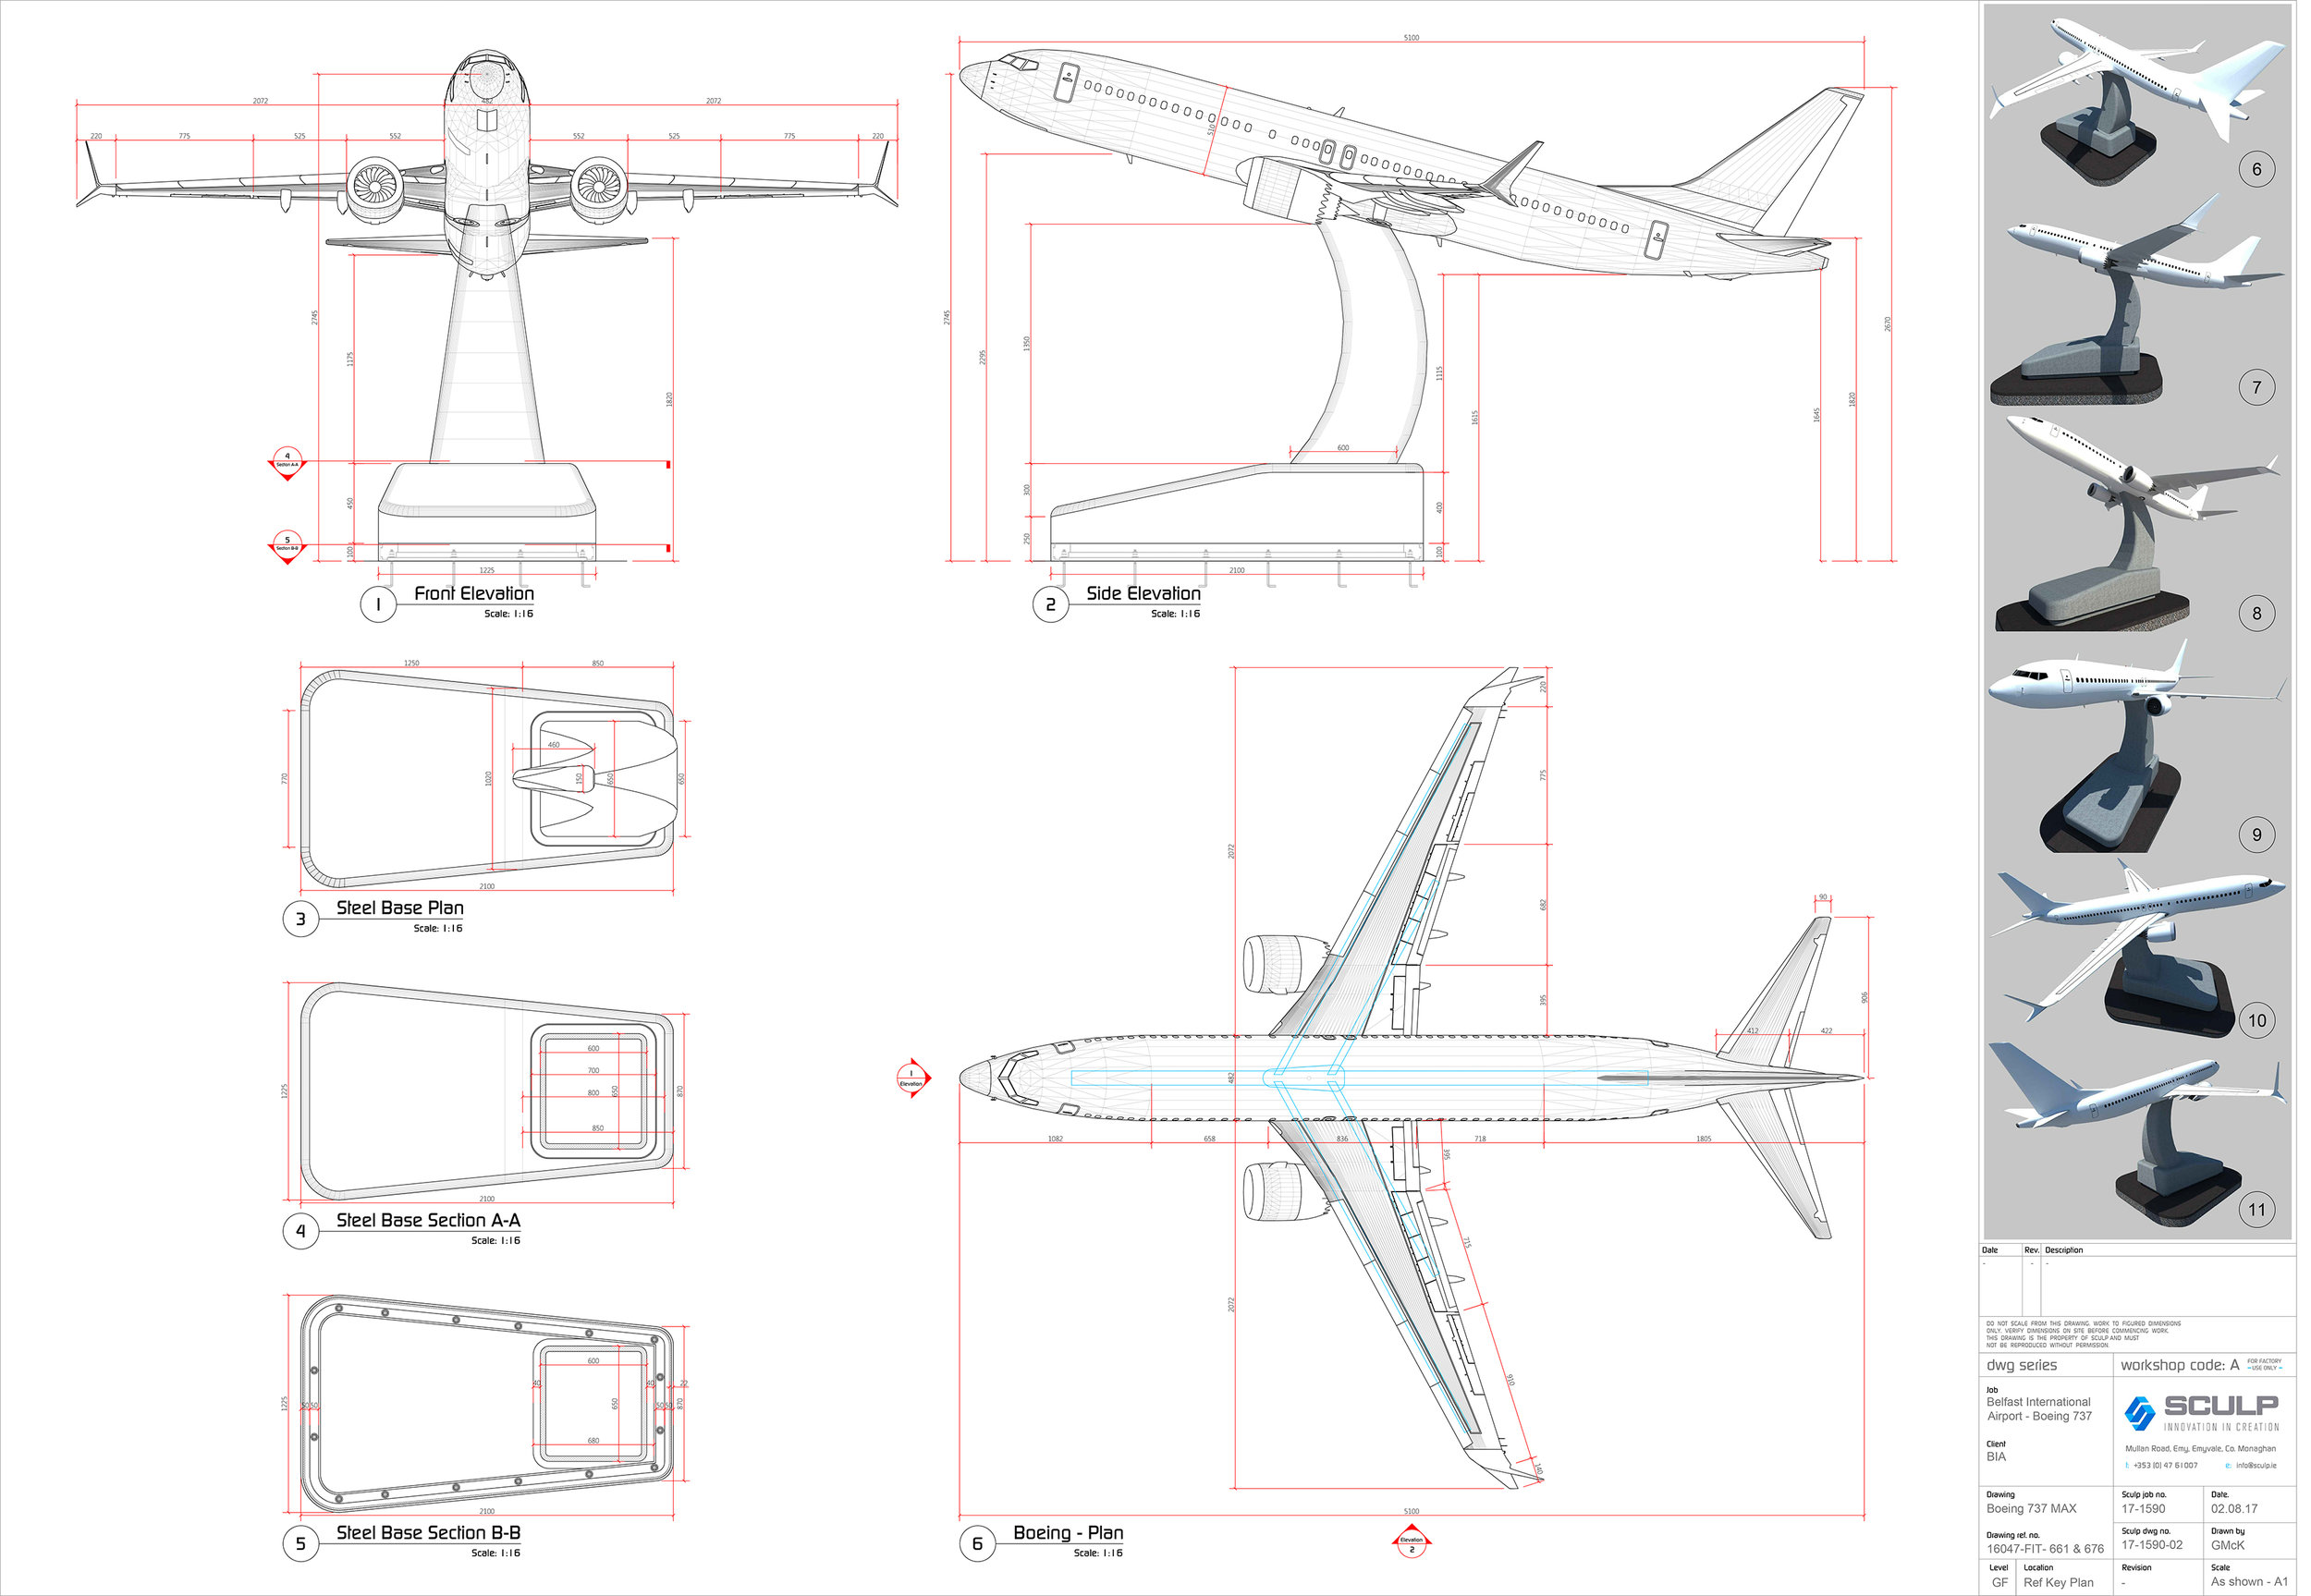 TUI Plane Drawings